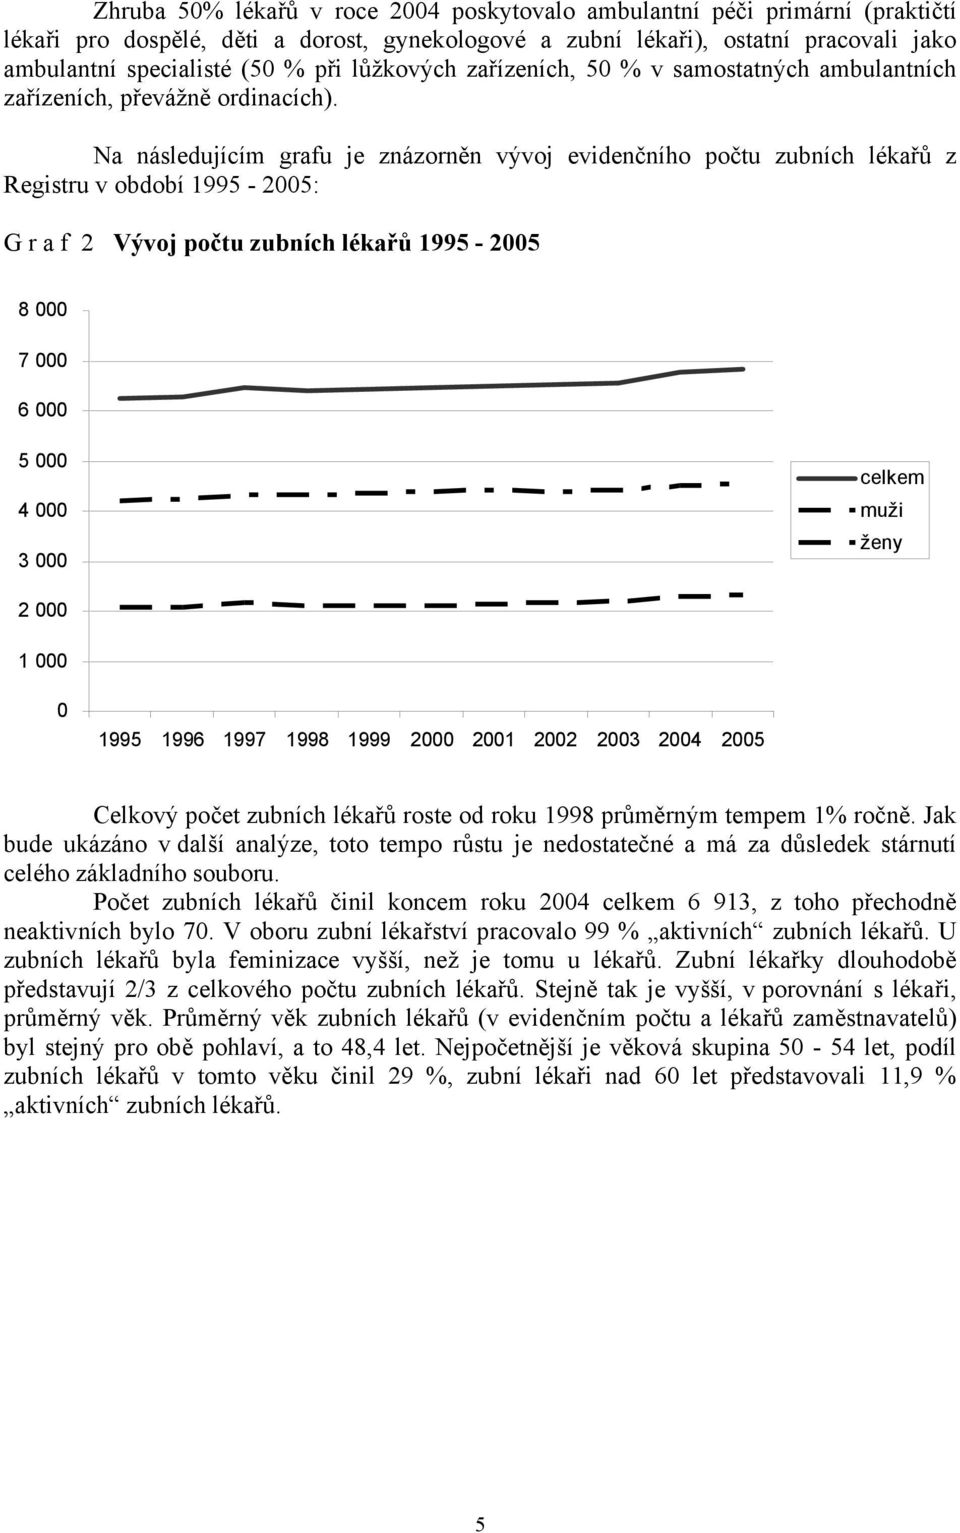 Na následujícím grafu je znázorněn vývoj evidenčního počtu zubních lékařů z Registru v období 1995-2005: G r a f 2 Vývoj počtu zubních lékařů 1995-2005 8 000 7 000 6 000 5 000 4 000 3 000 celkem muži